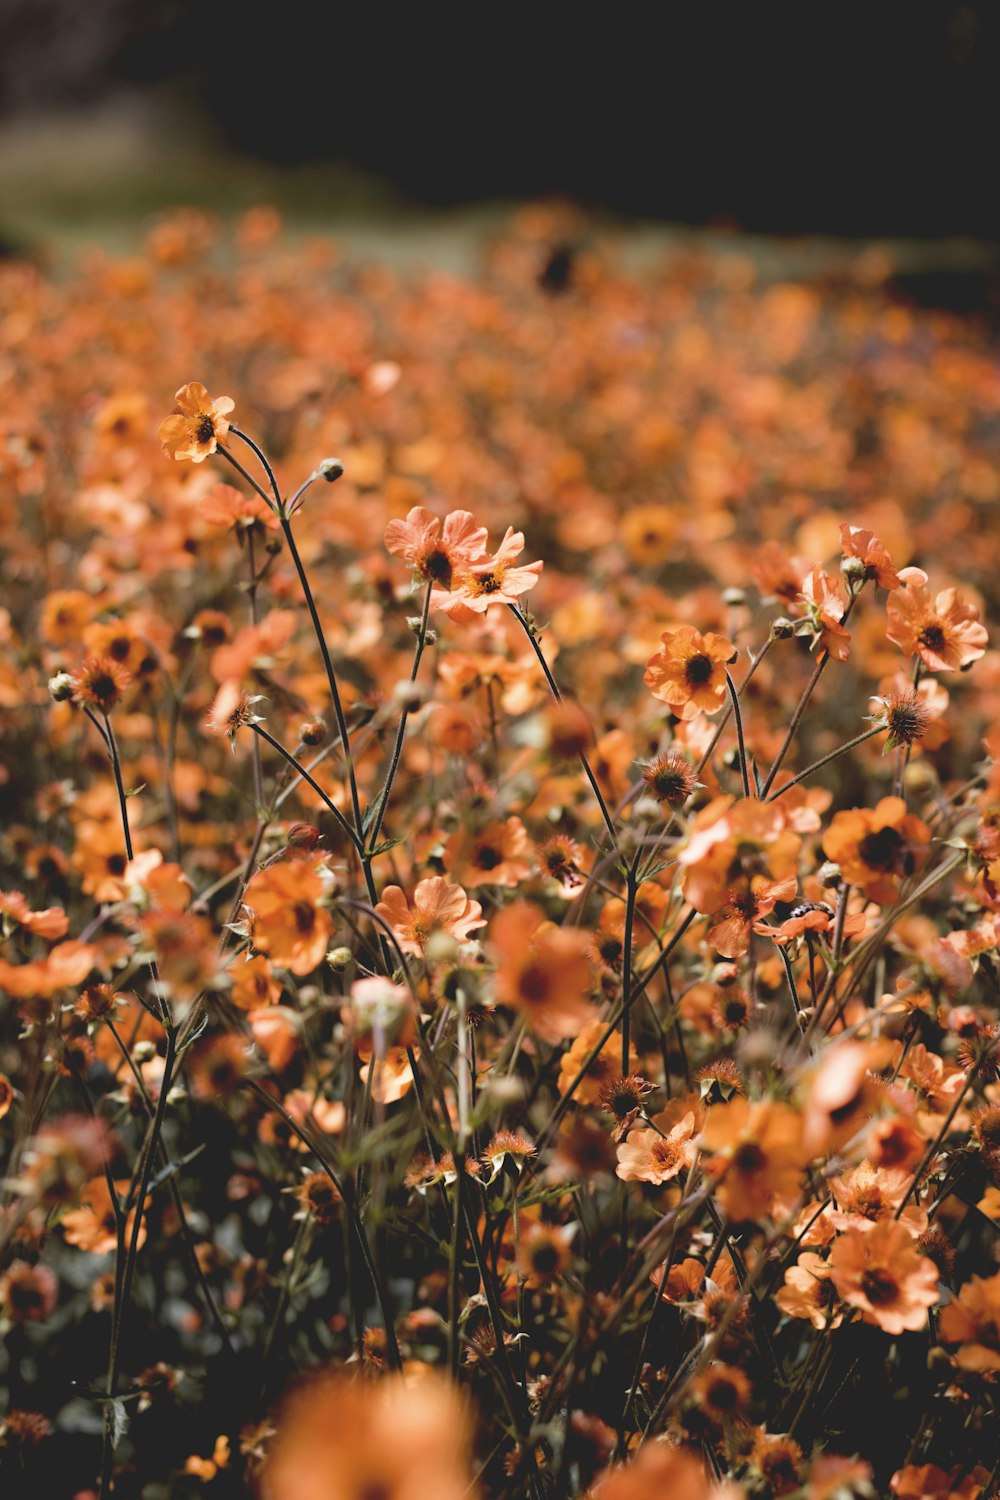 オレンジ色の花びらの花の咲くセレクティブフォーカス写真